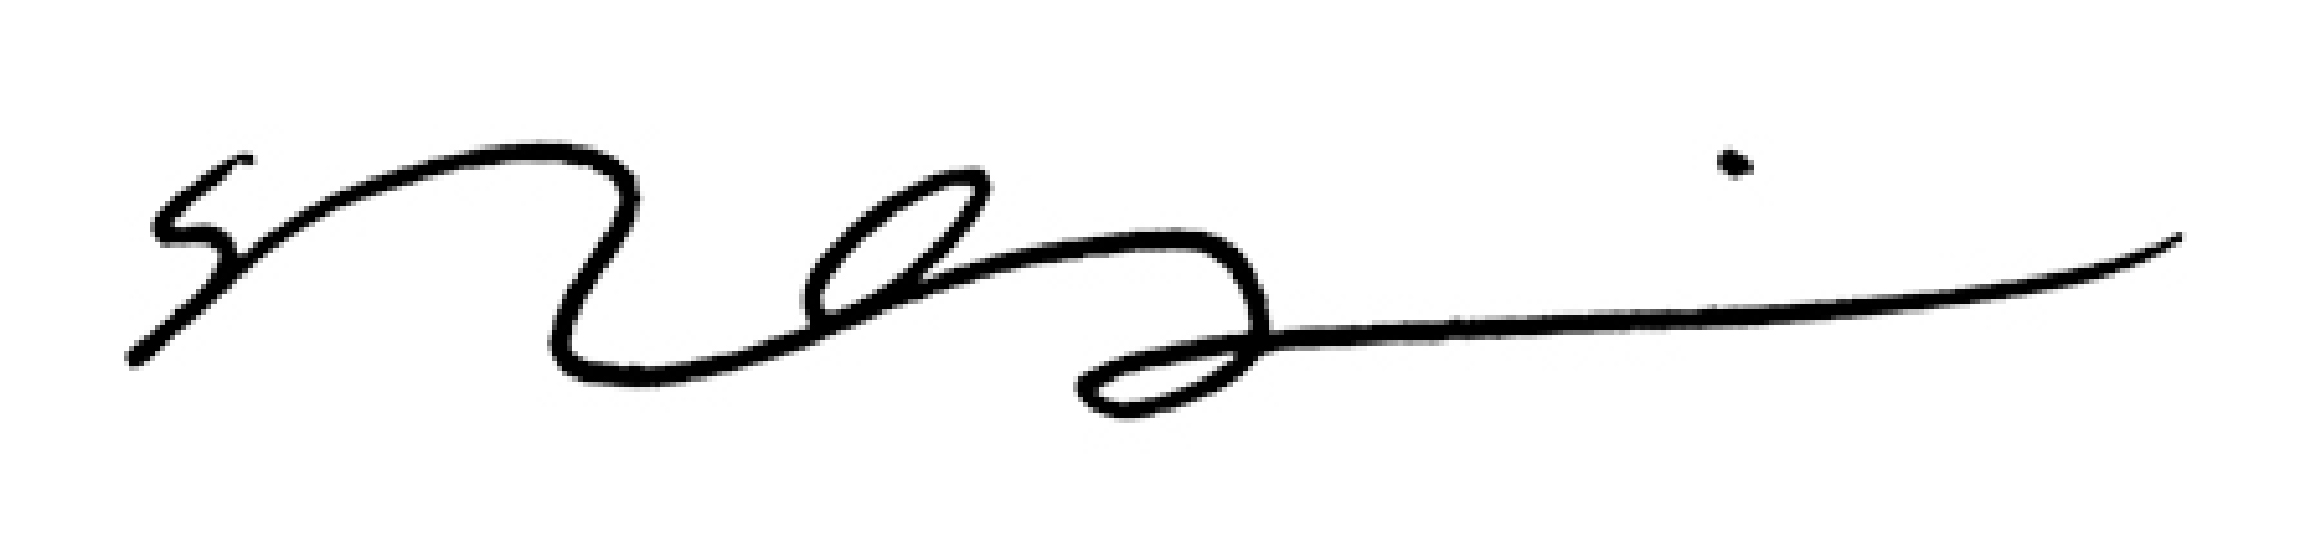 Michael Quinn signature